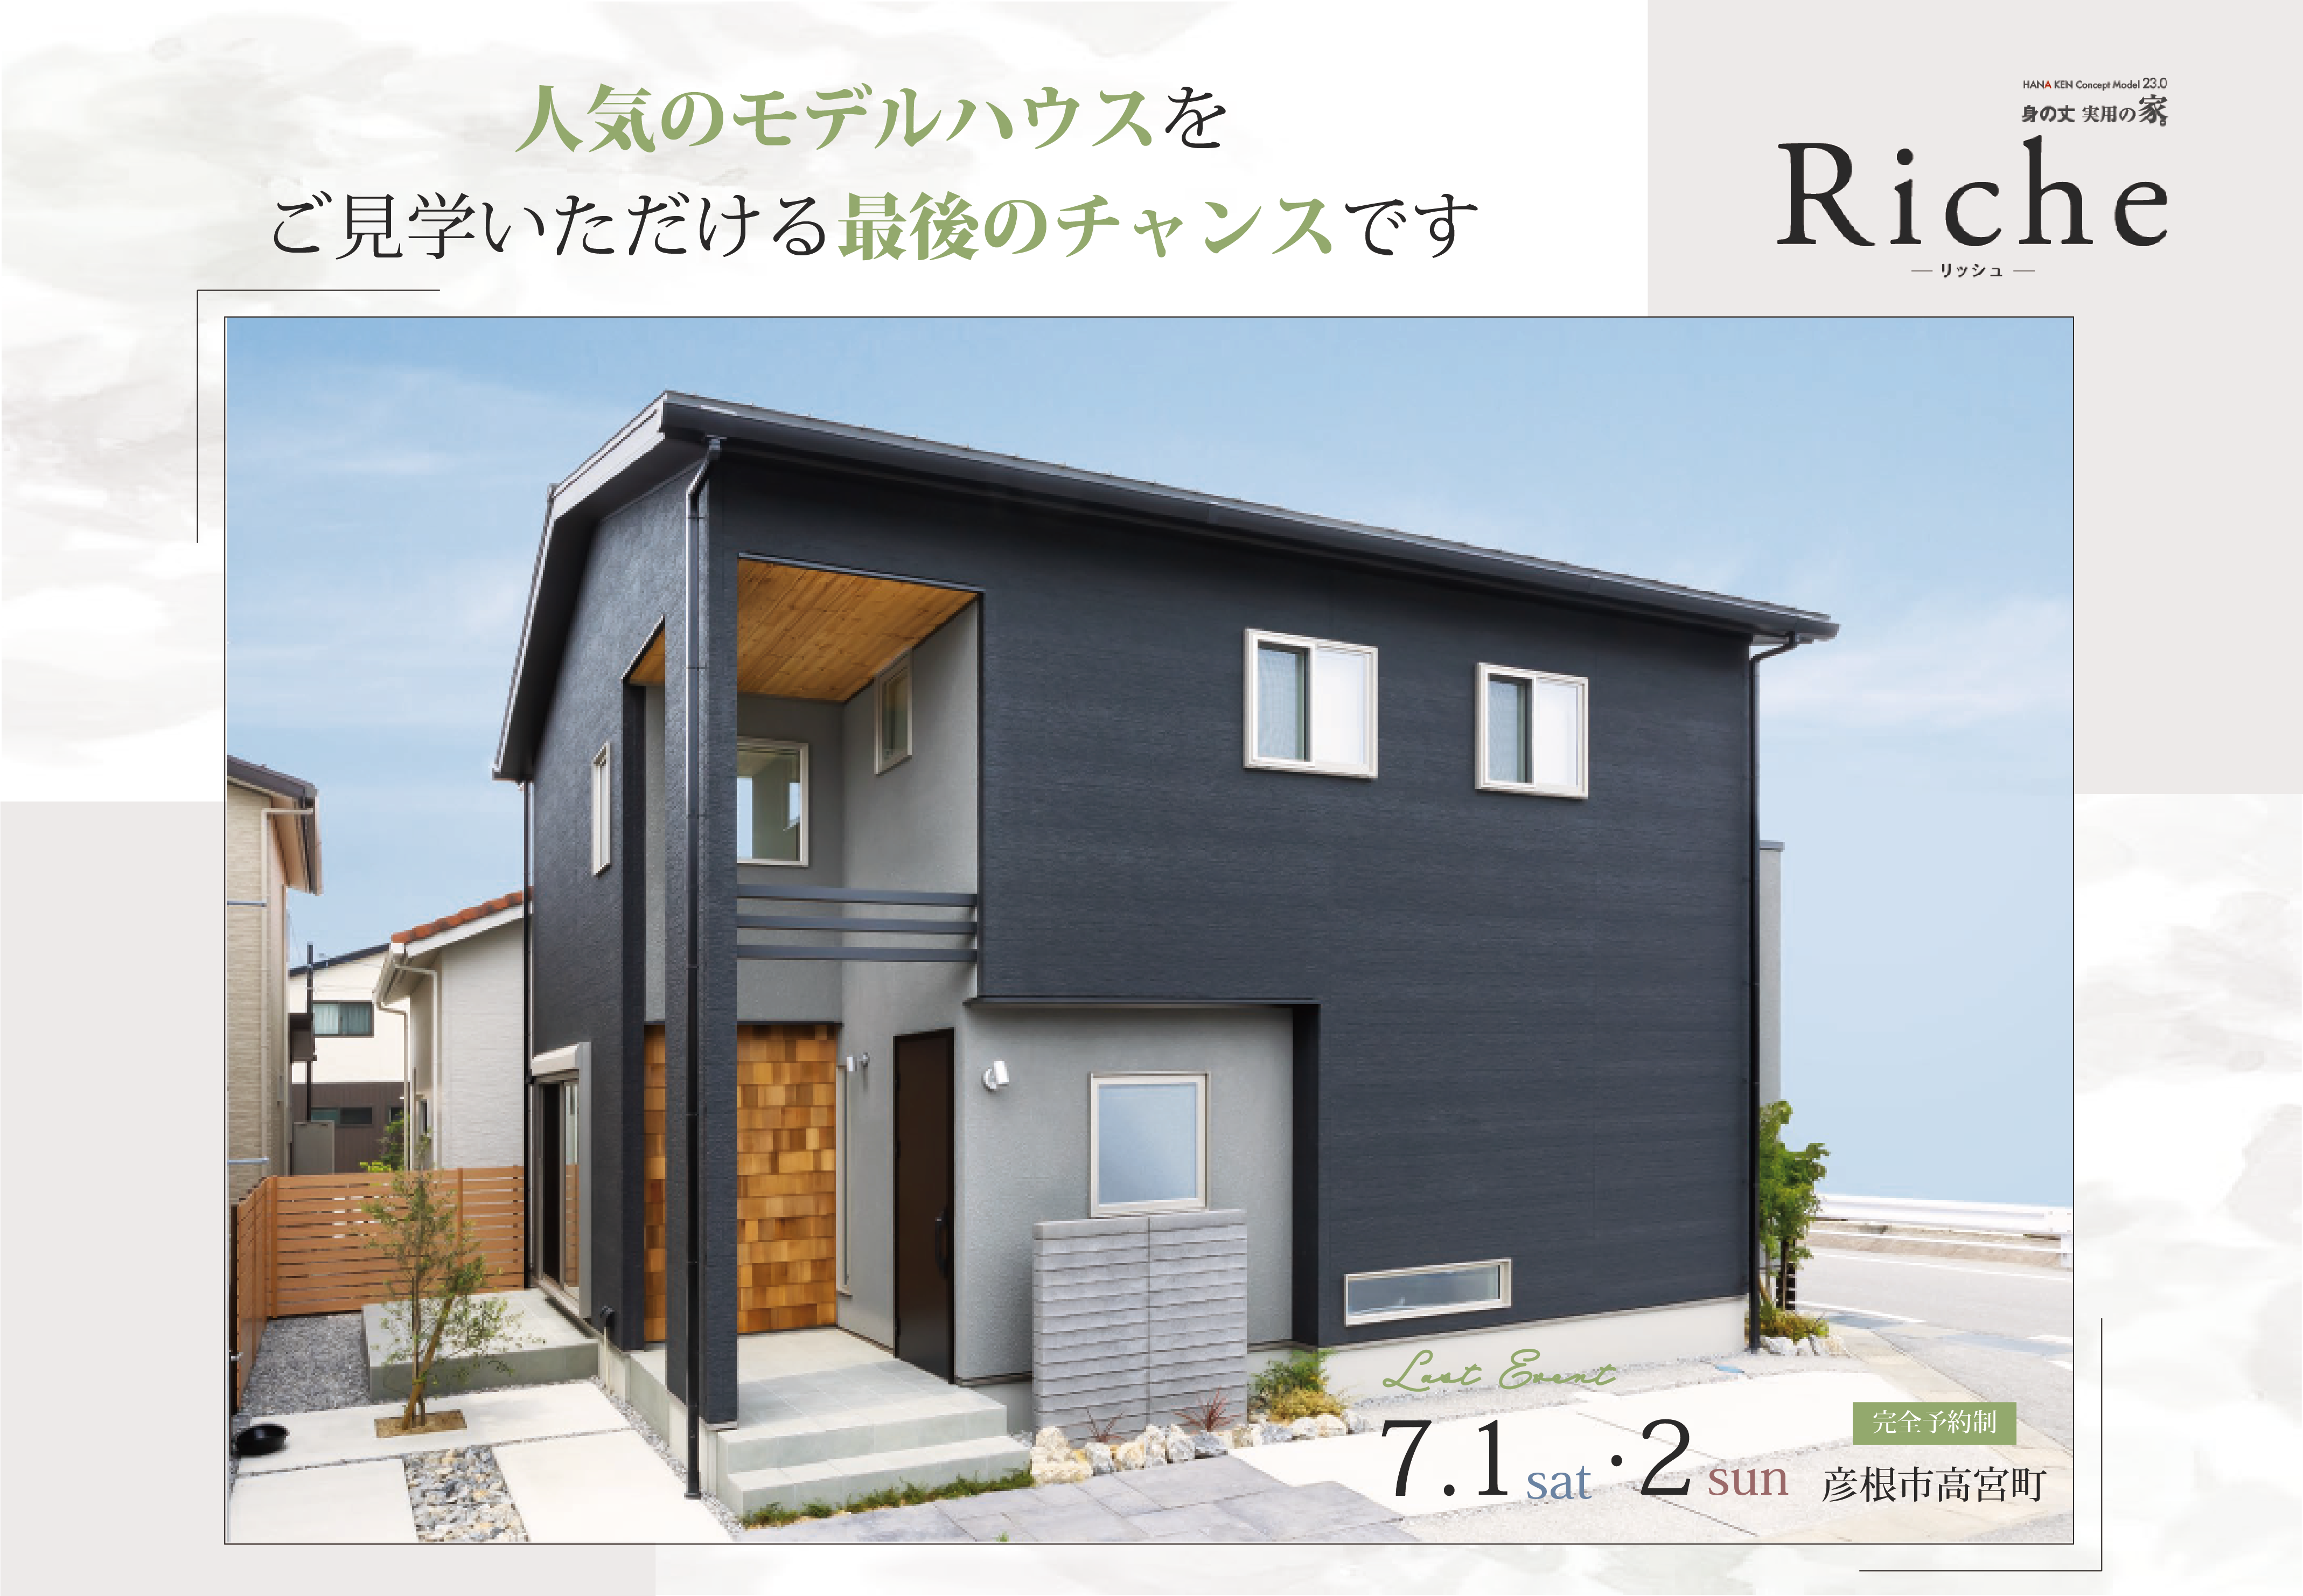 【ラストイベント】モデルハウス身の丈実用の家。Riche-リッシュ-